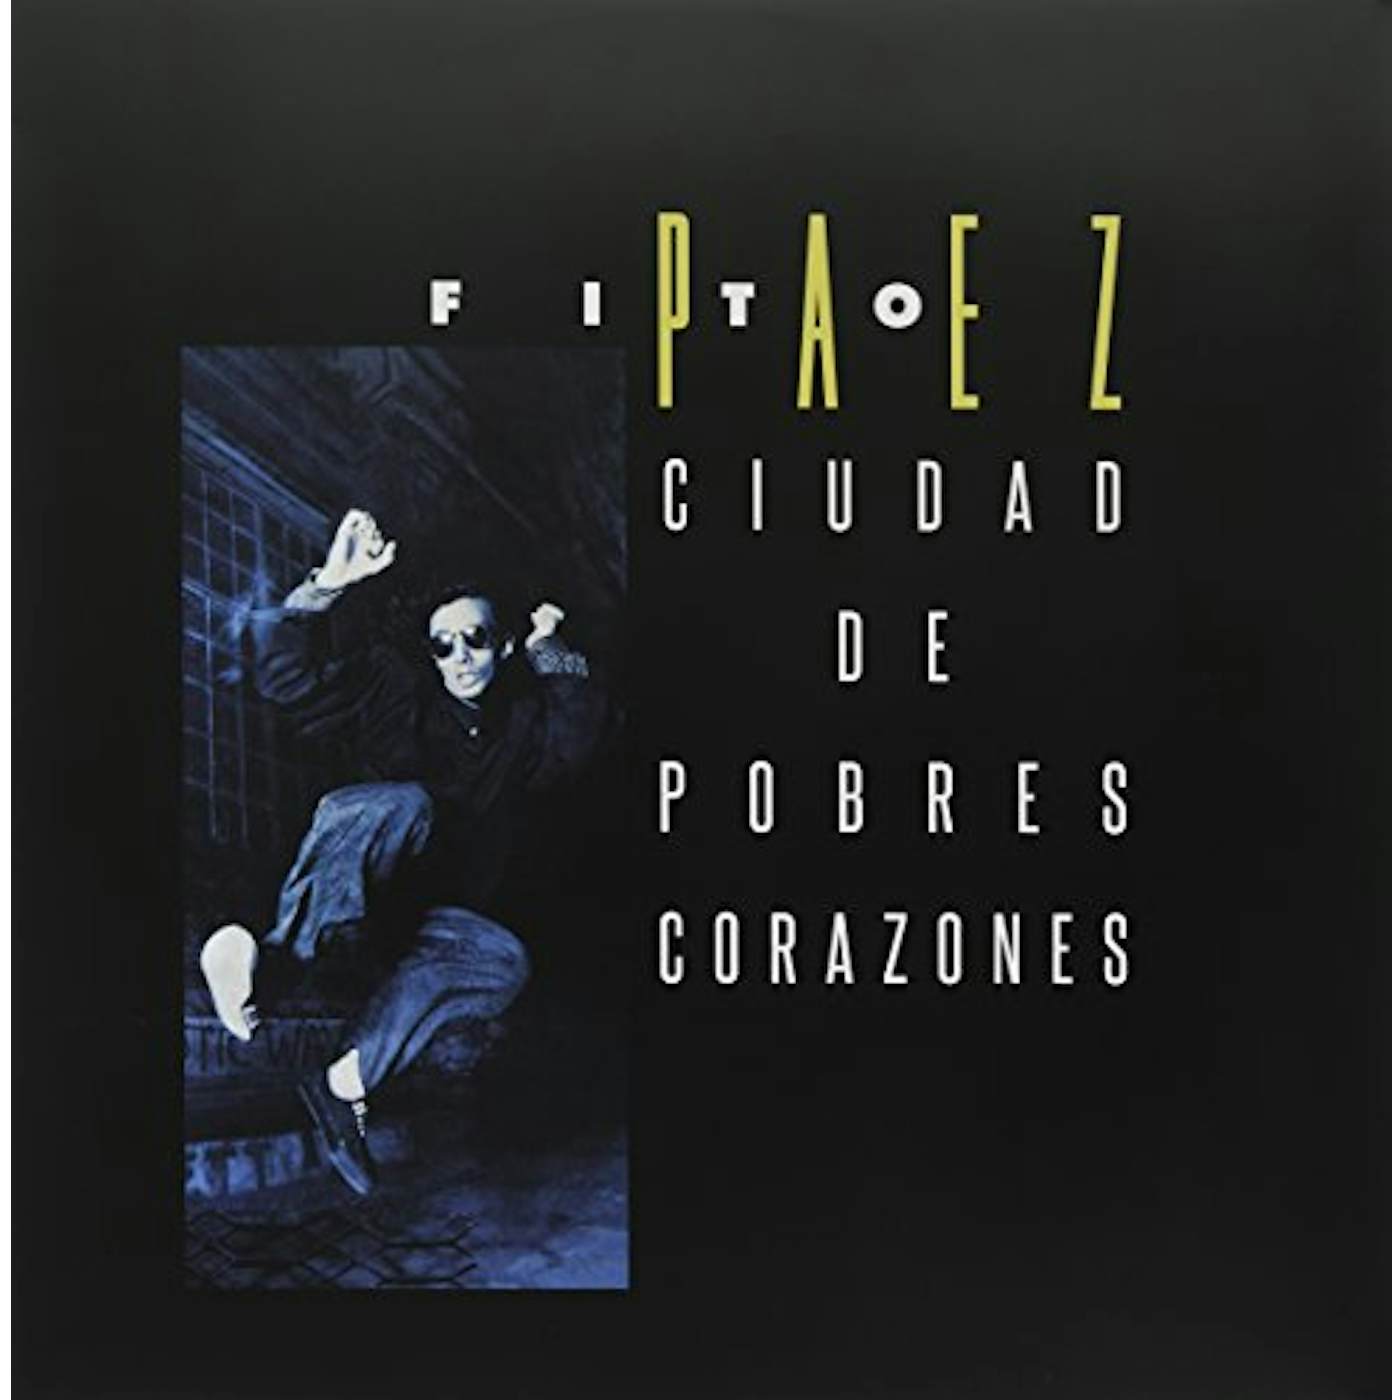 Fito Paez Ciudad De Pobres Corazones Vinyl Record